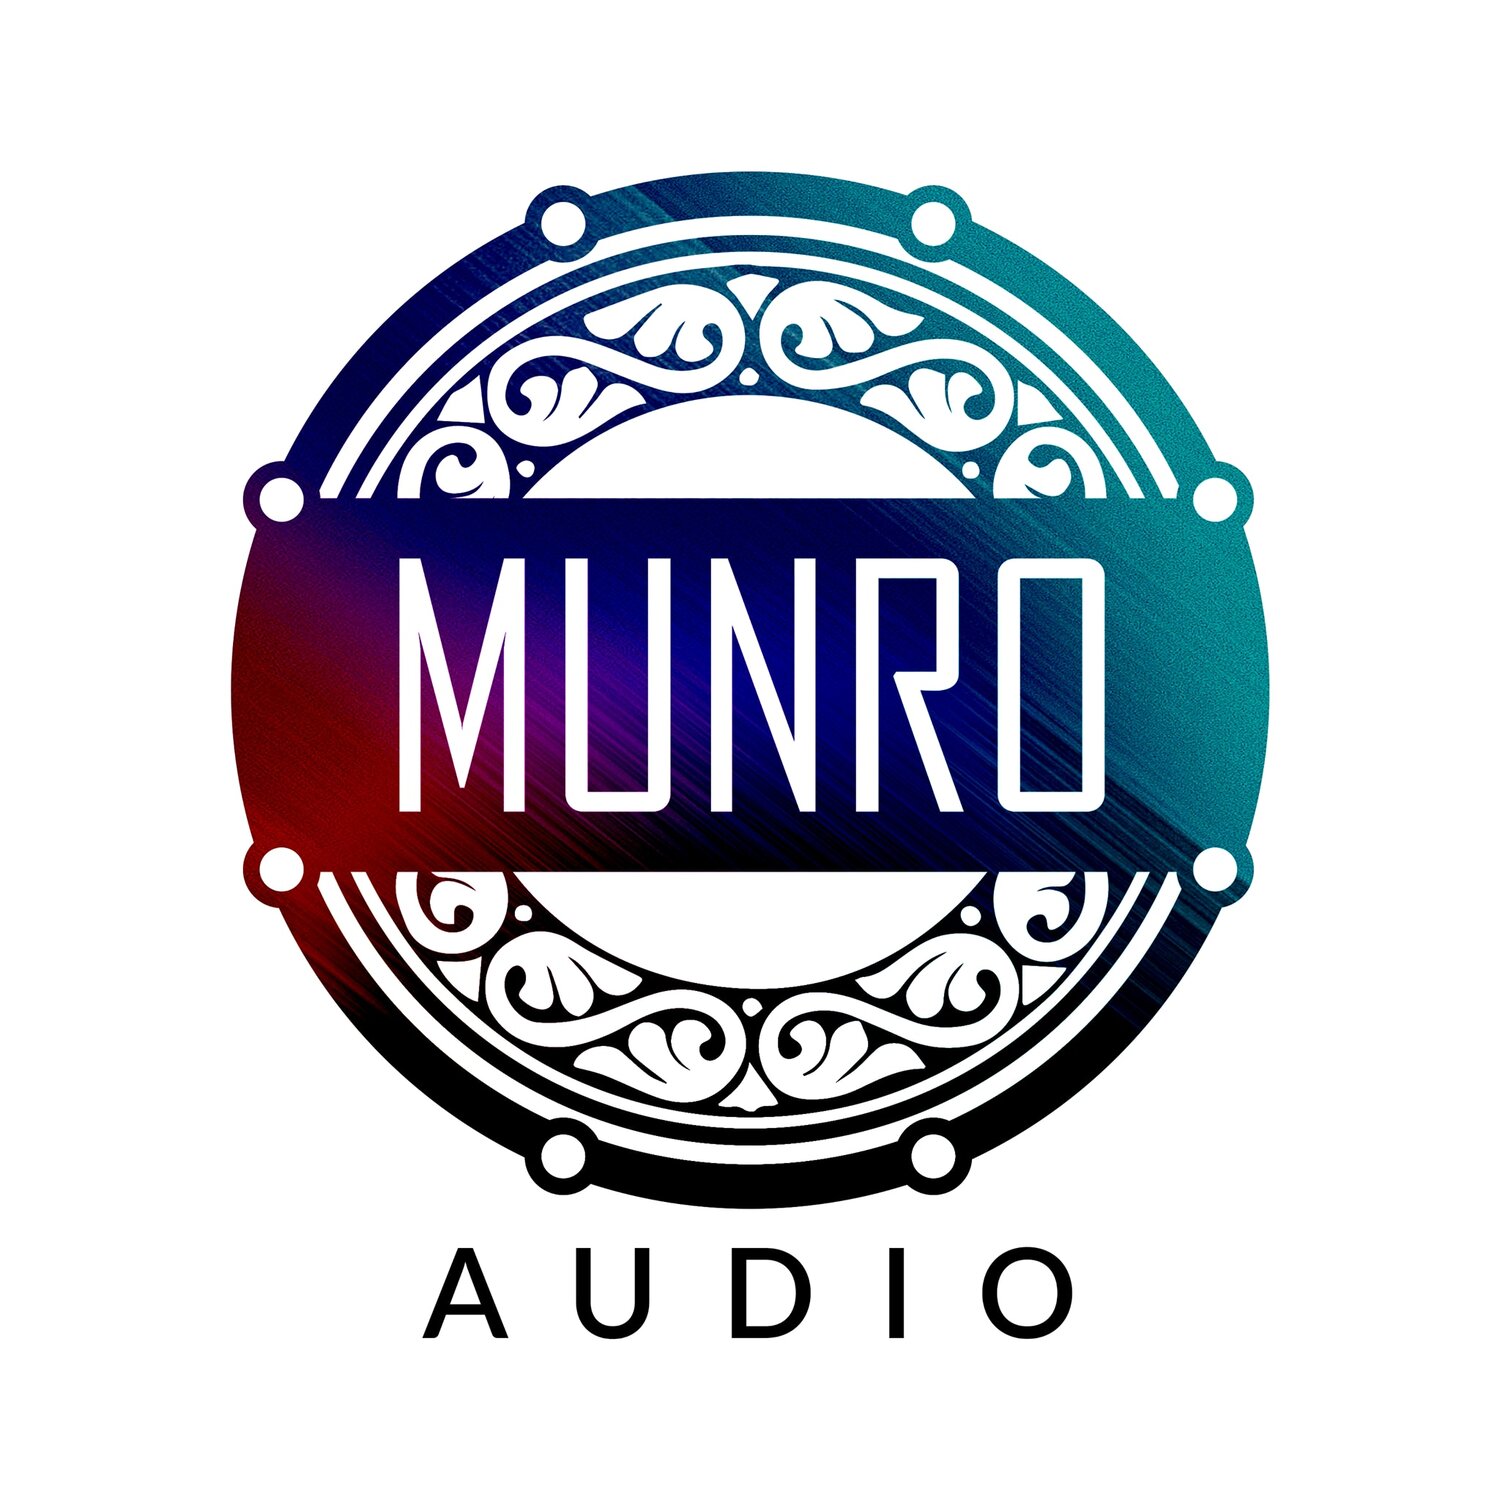 Munro Audio